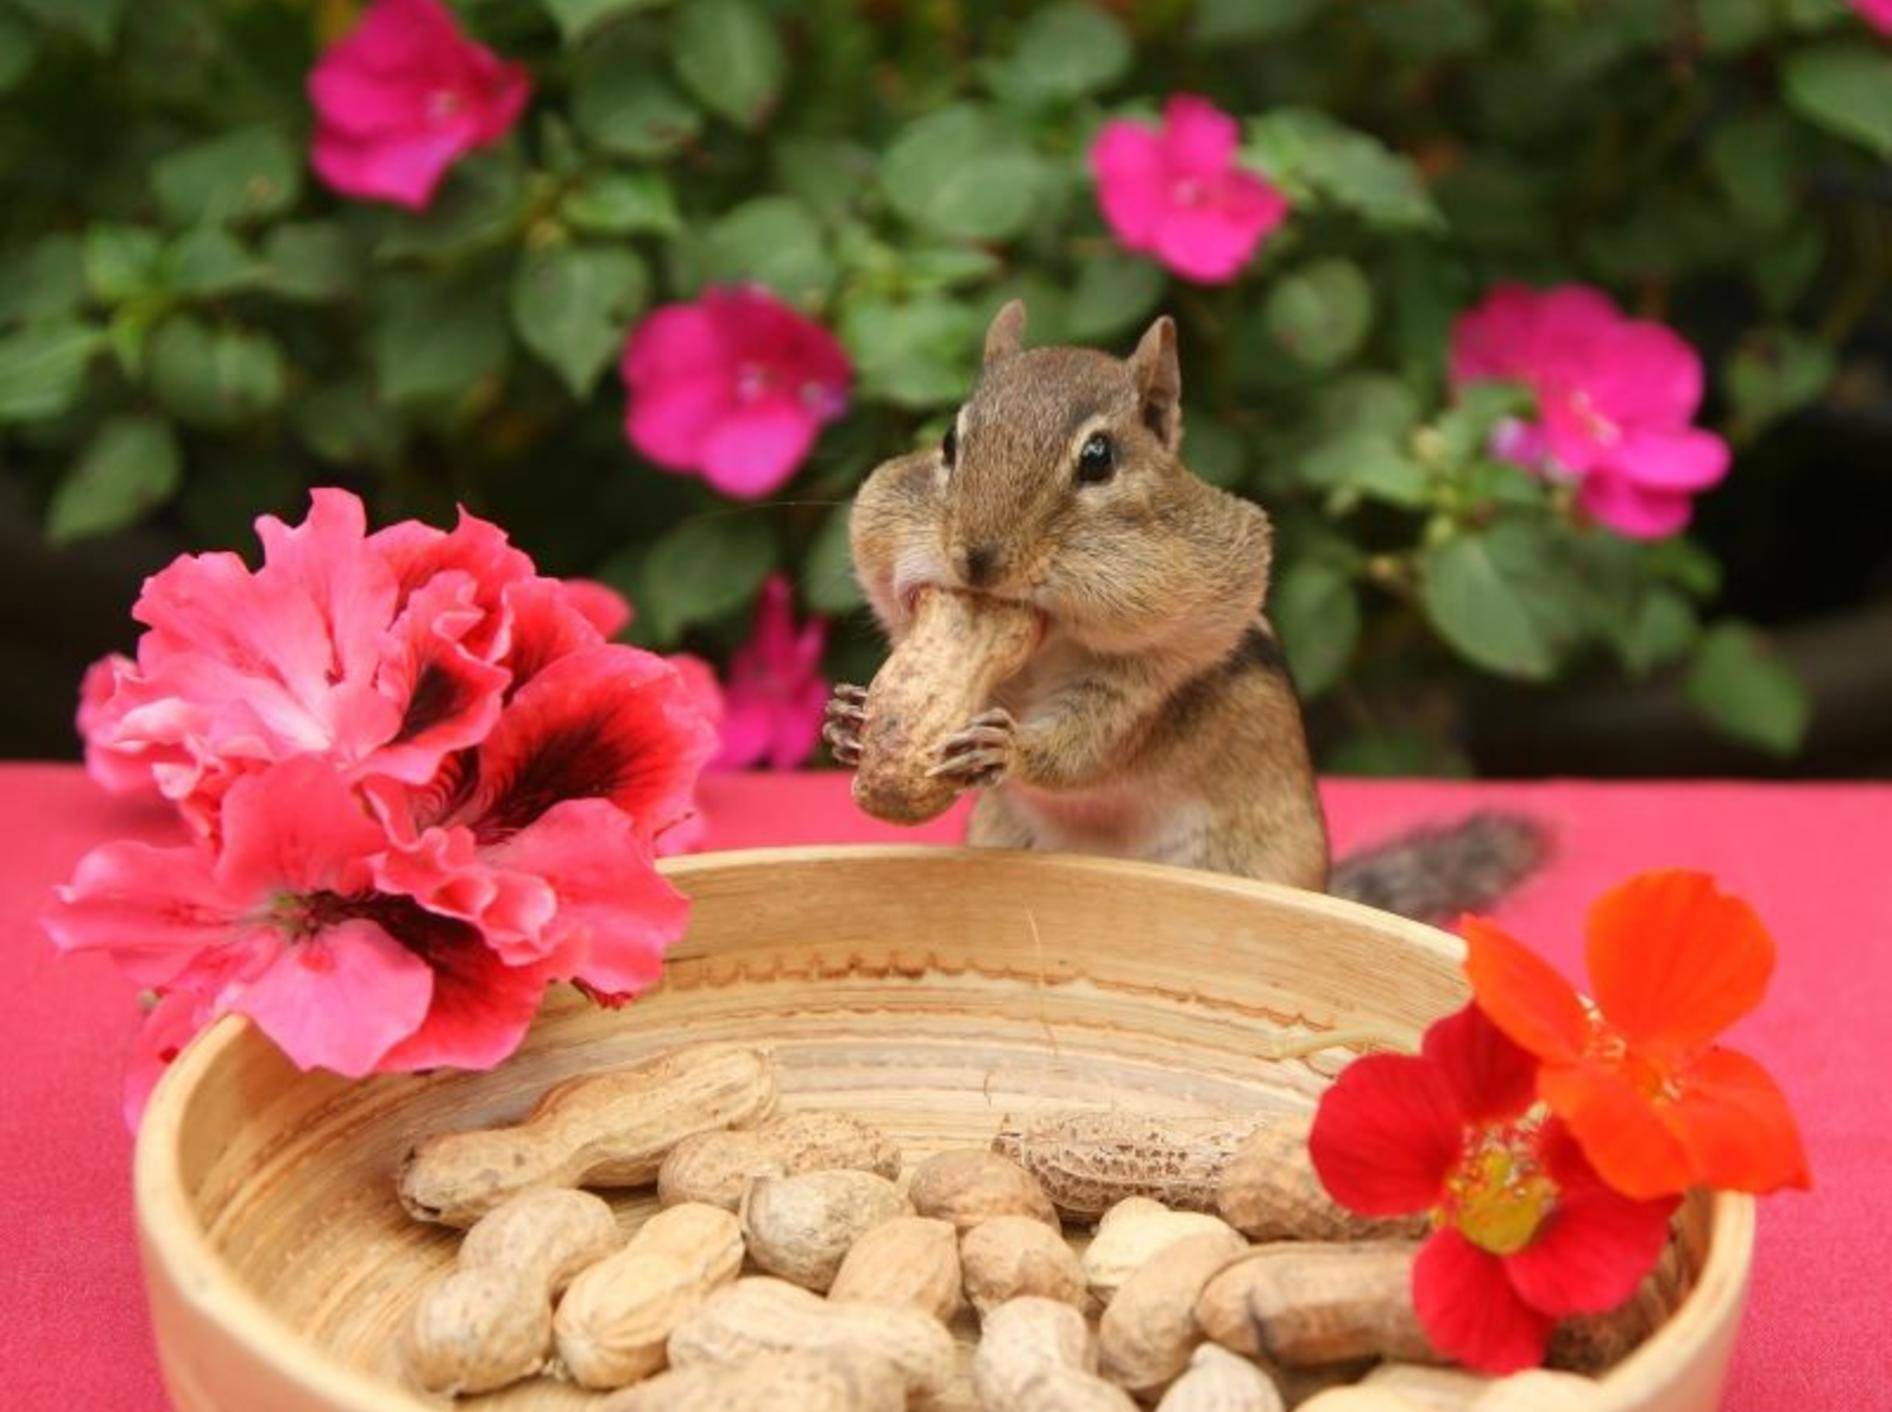 Streifenhörnchen beim Mitagessen: "Lecker Erdnüsse" — Bild: Shutterstock / Elaine Davis